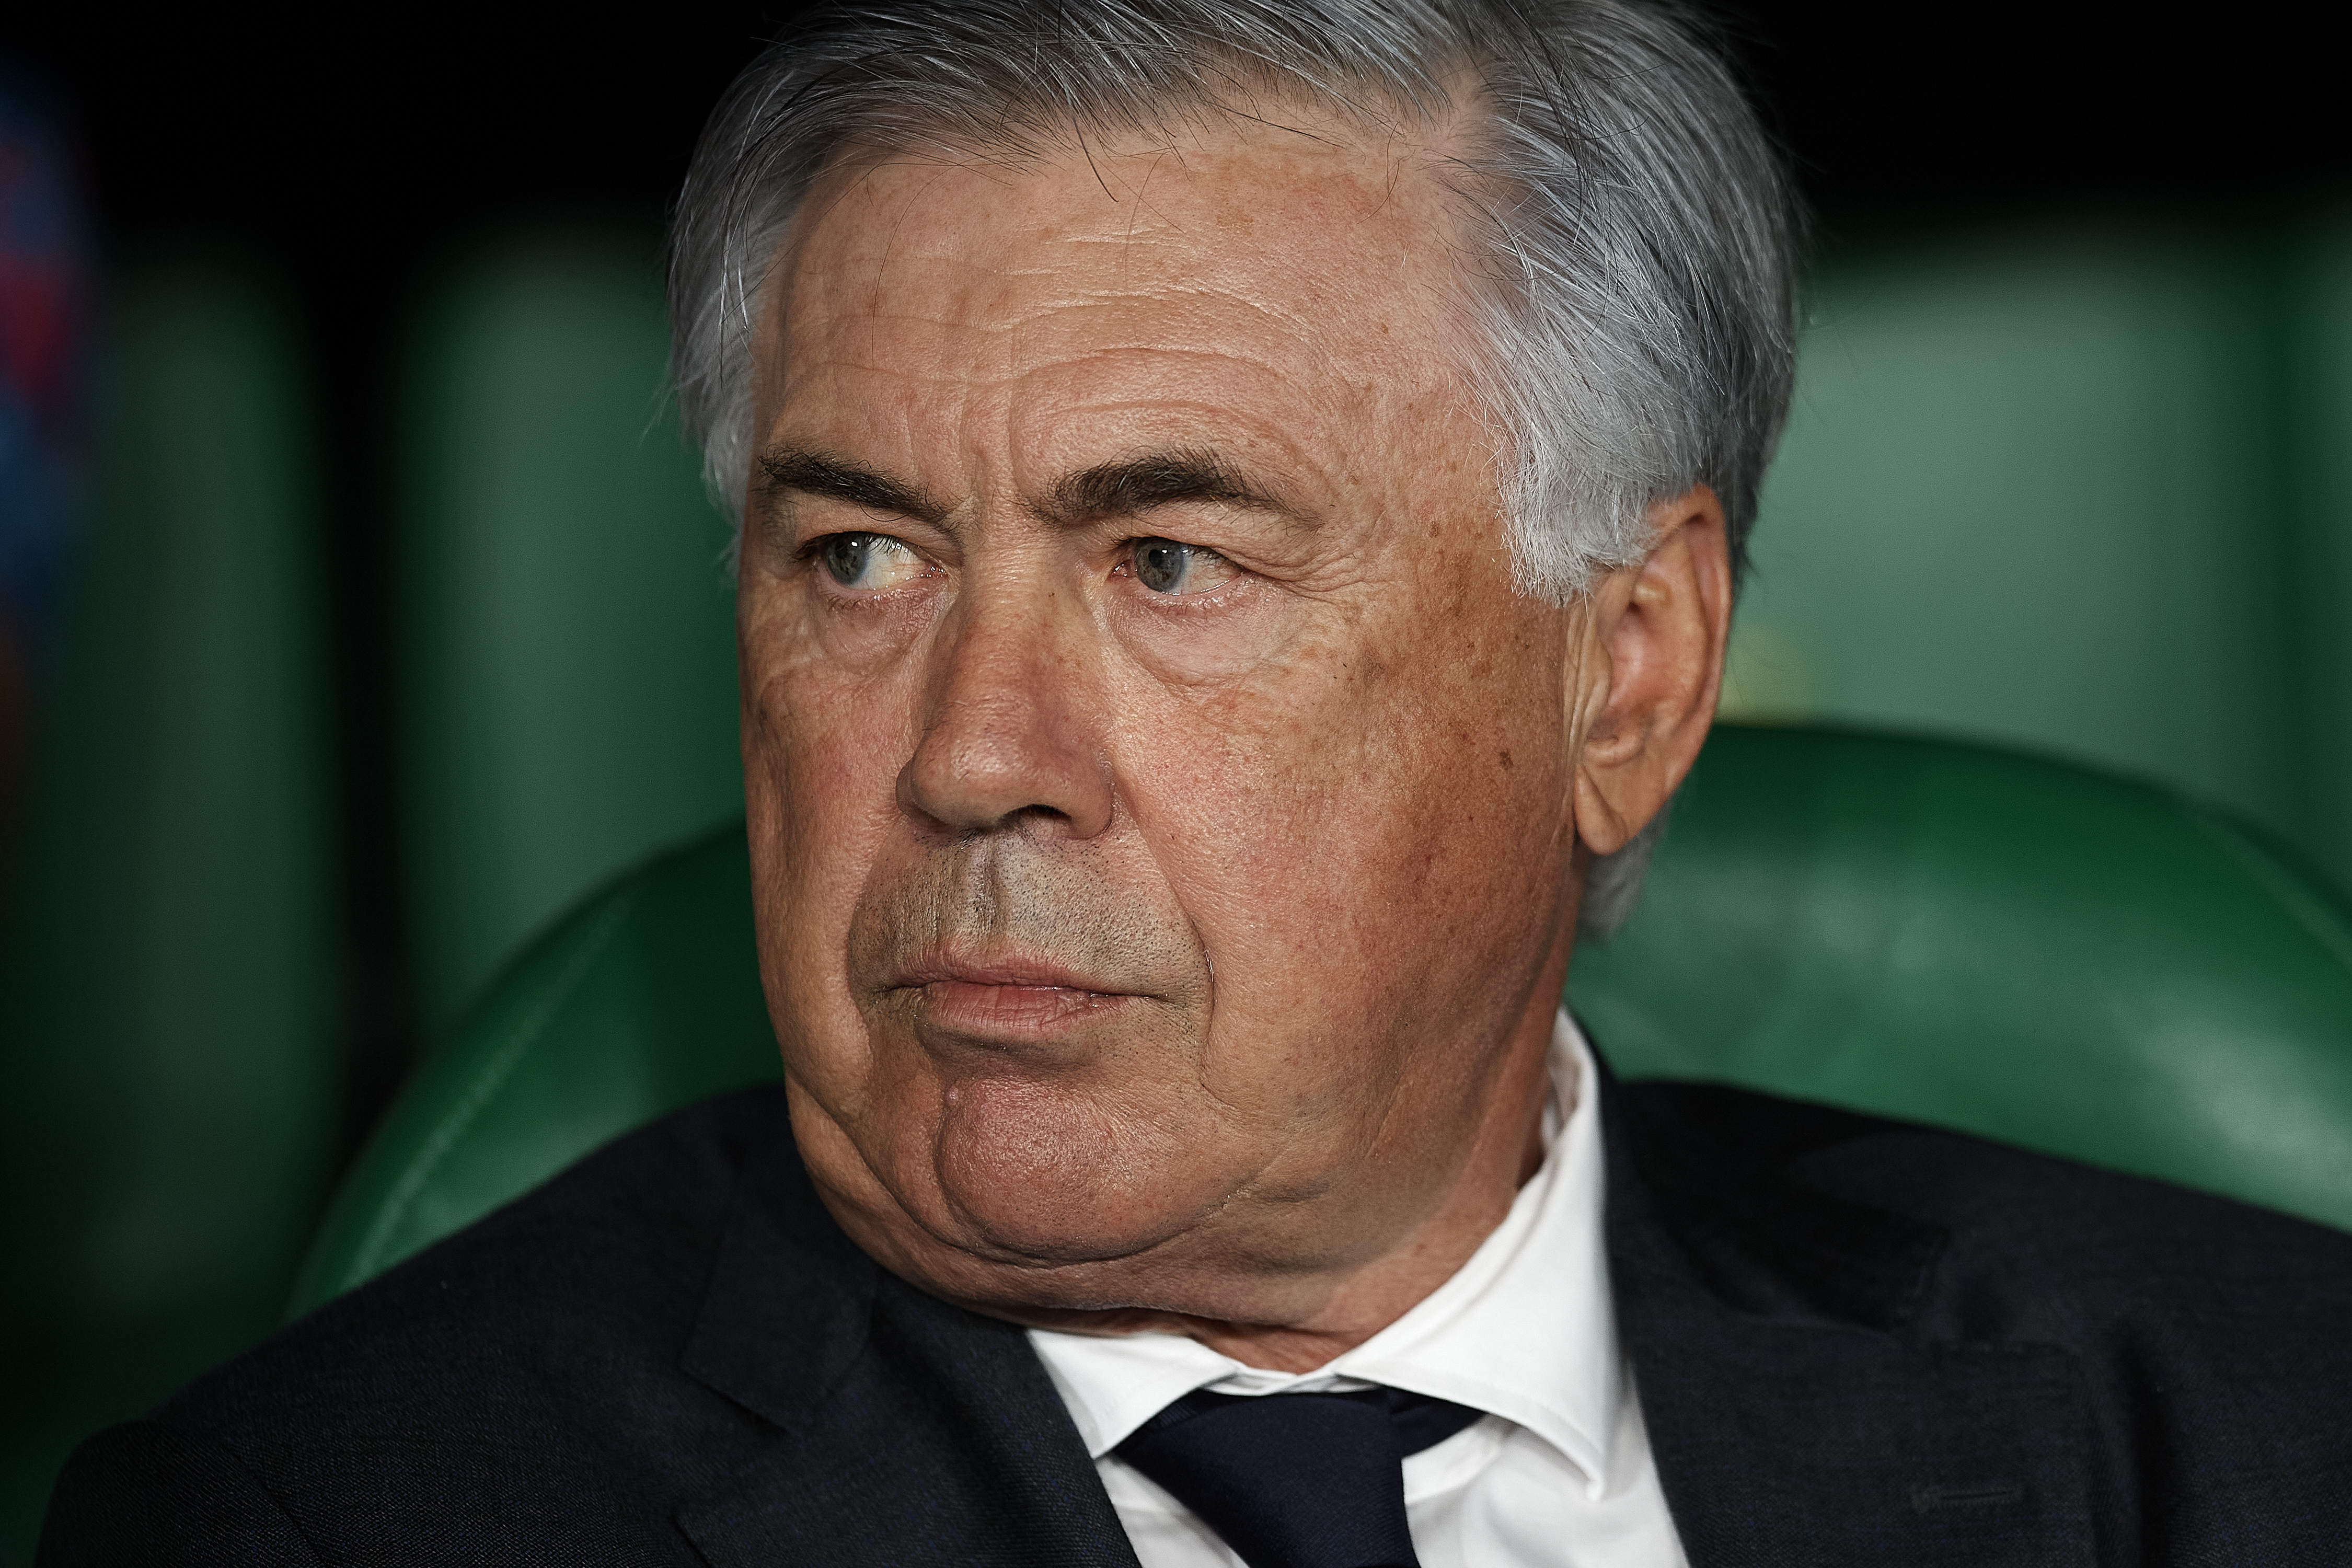 Download mobile wallpaper Sports, Soccer, Italian, Carlo Ancelotti for free.